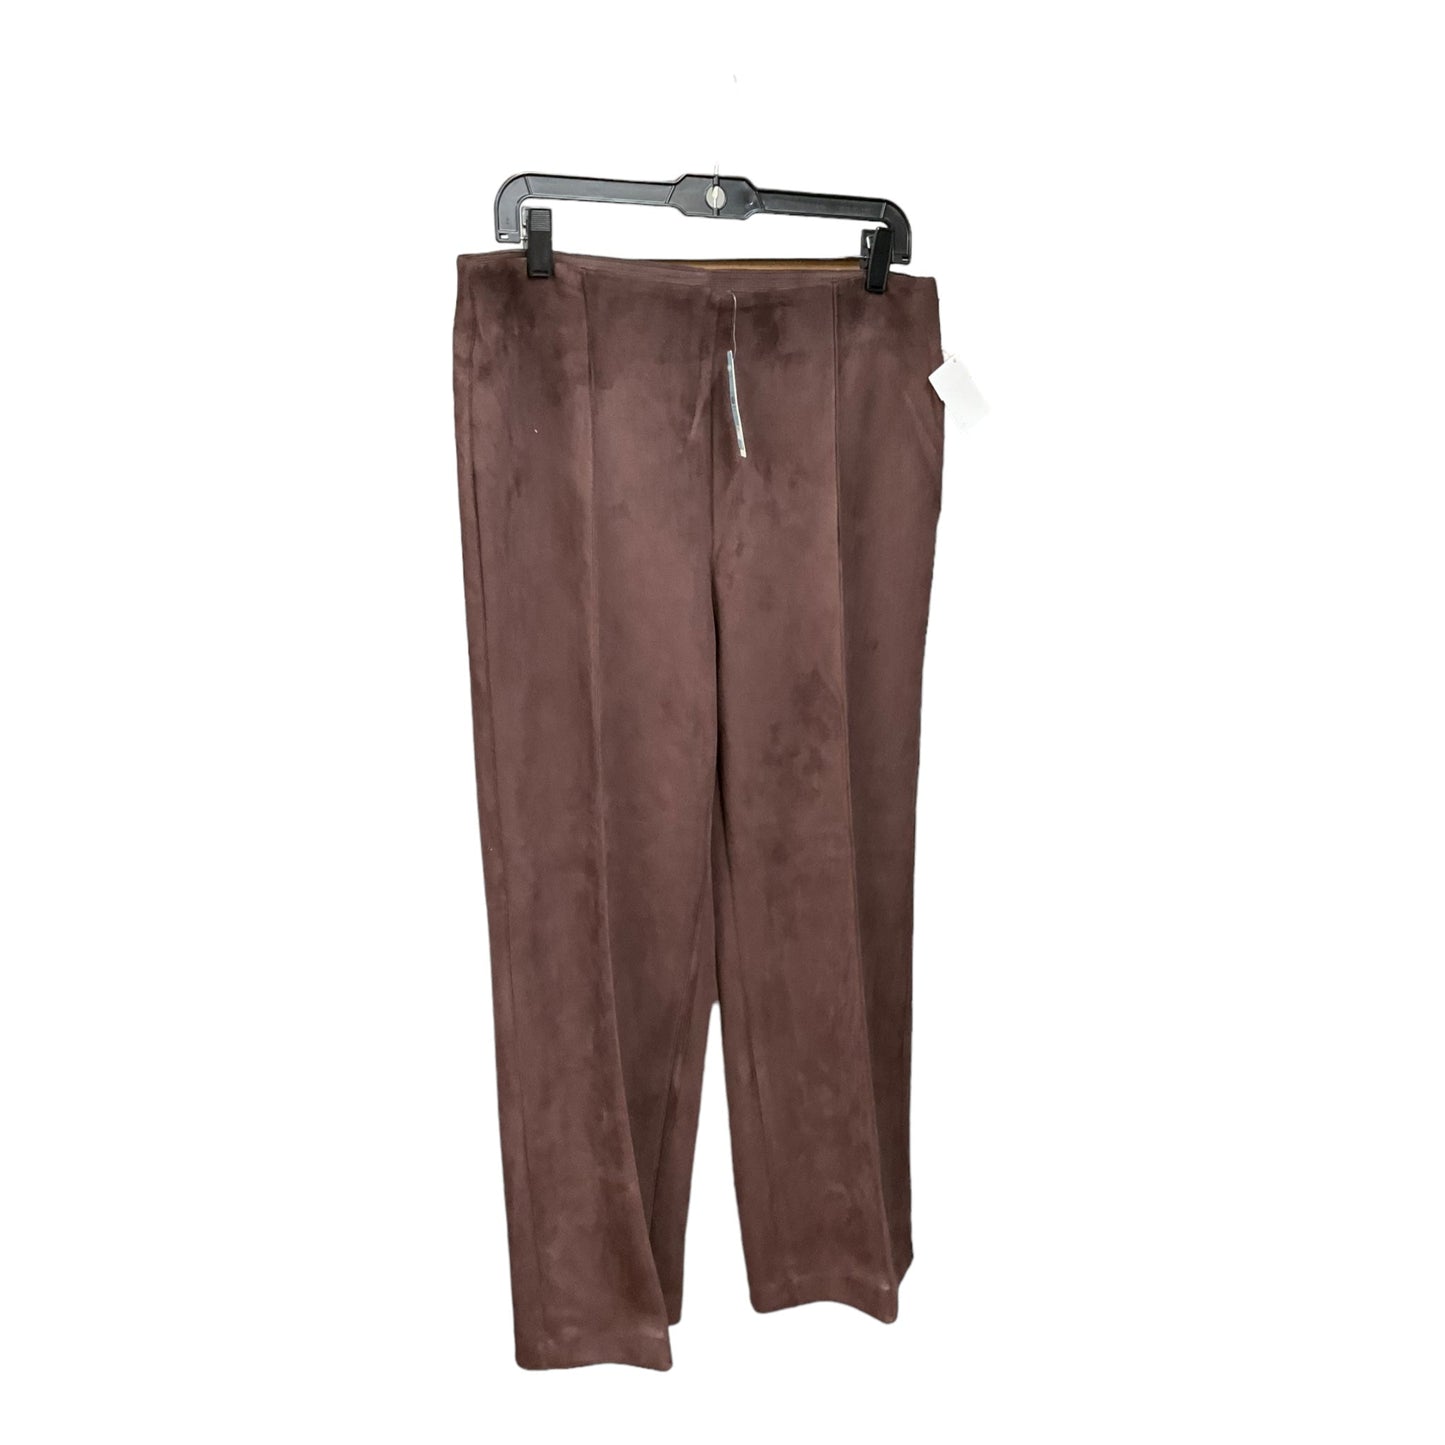 Brown Pants Dress Ann Taylor, Size 14